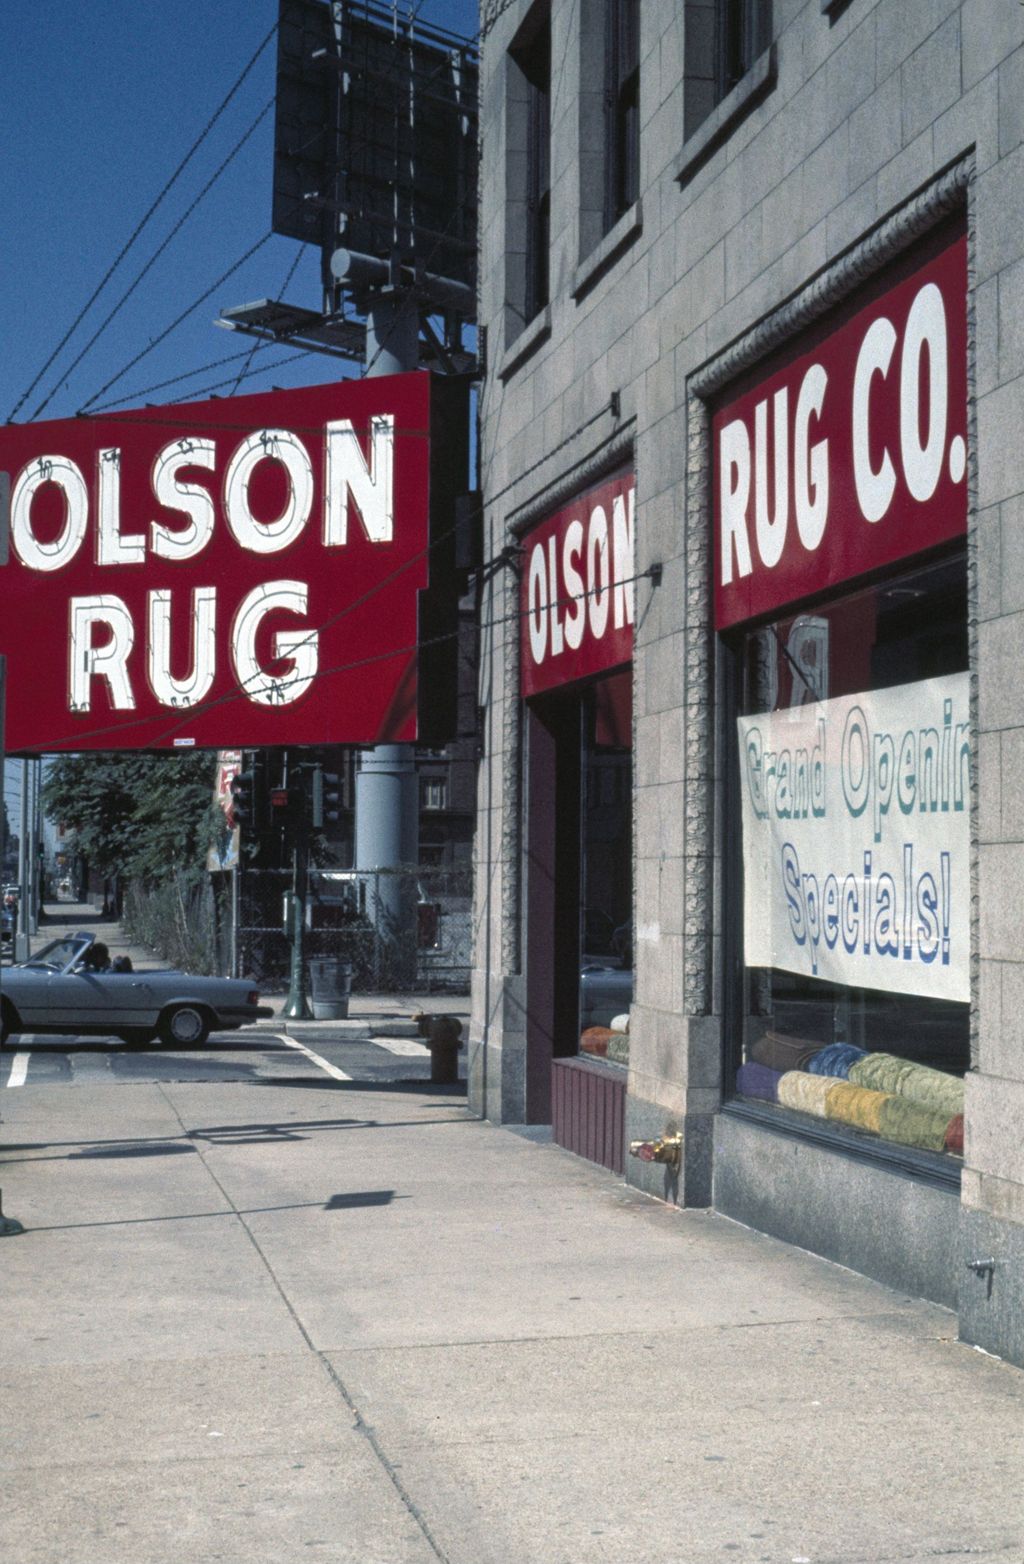 Olson Rug store, East Ohio Street